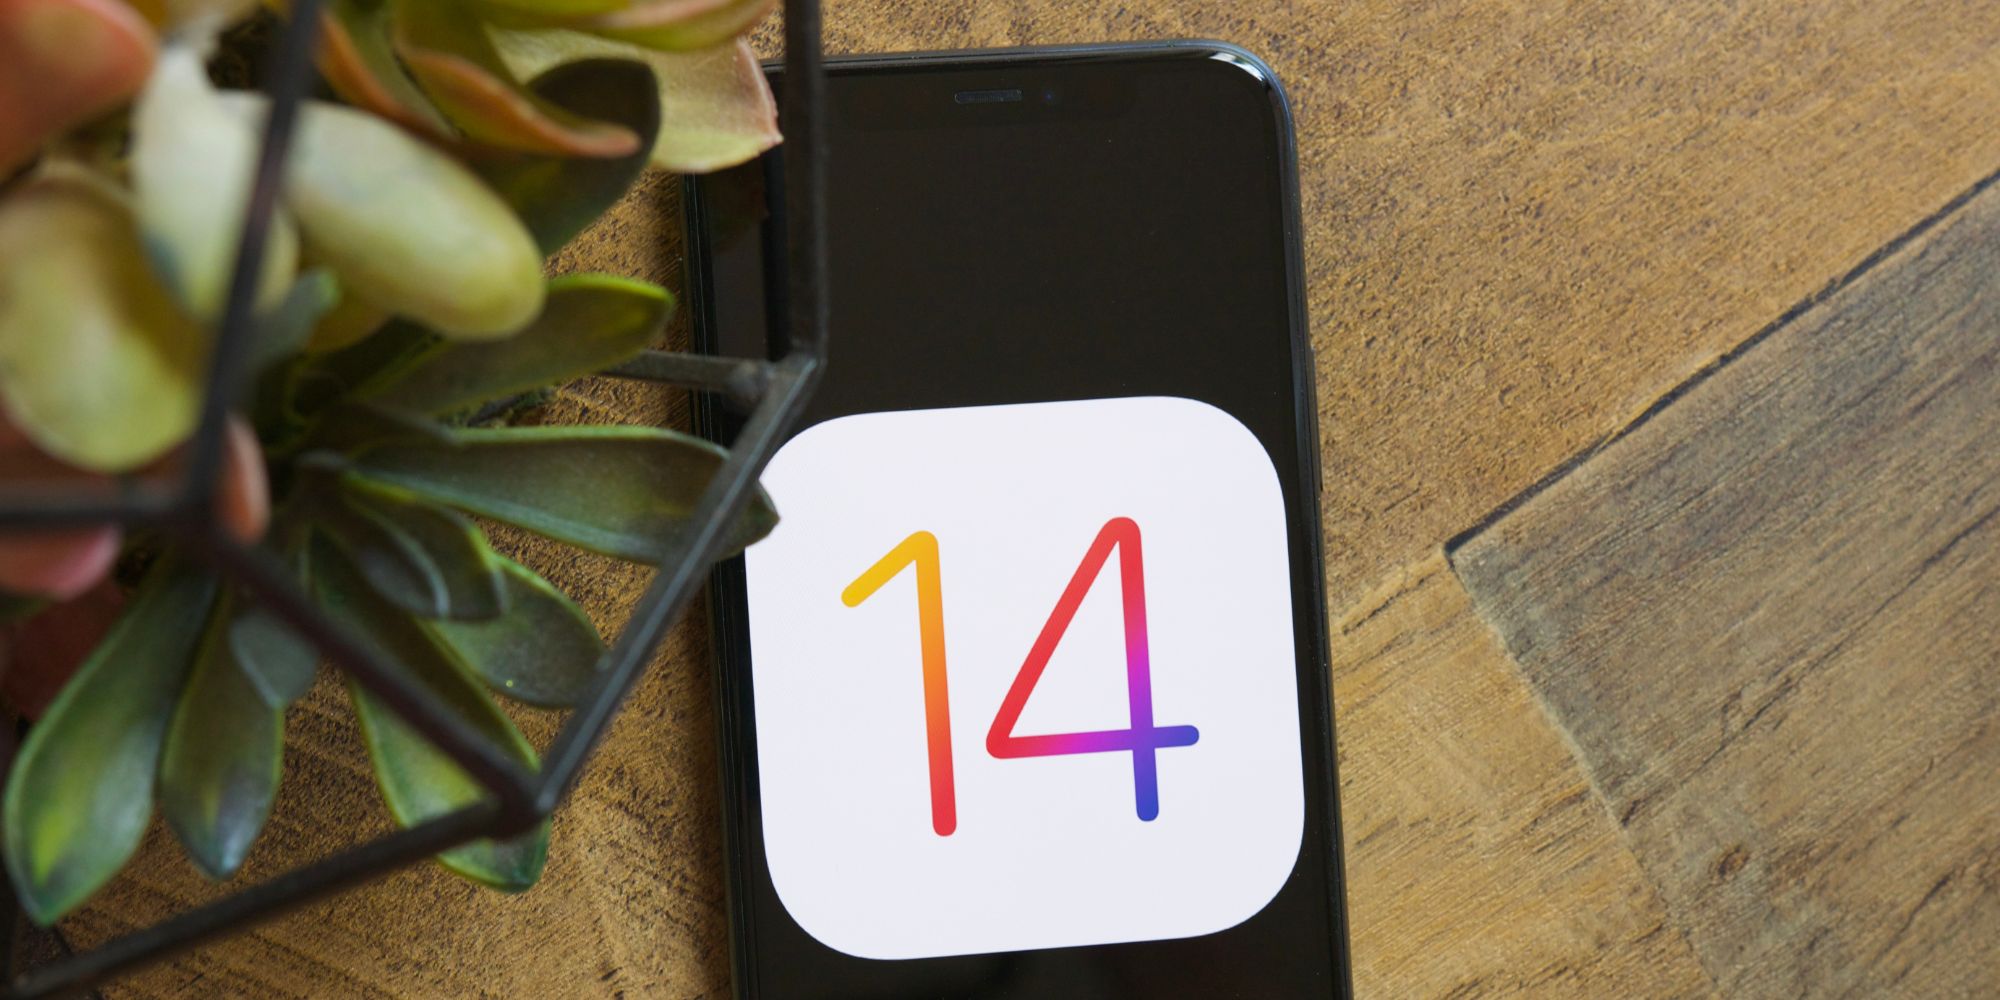 iOS 14 logo on an iPhone